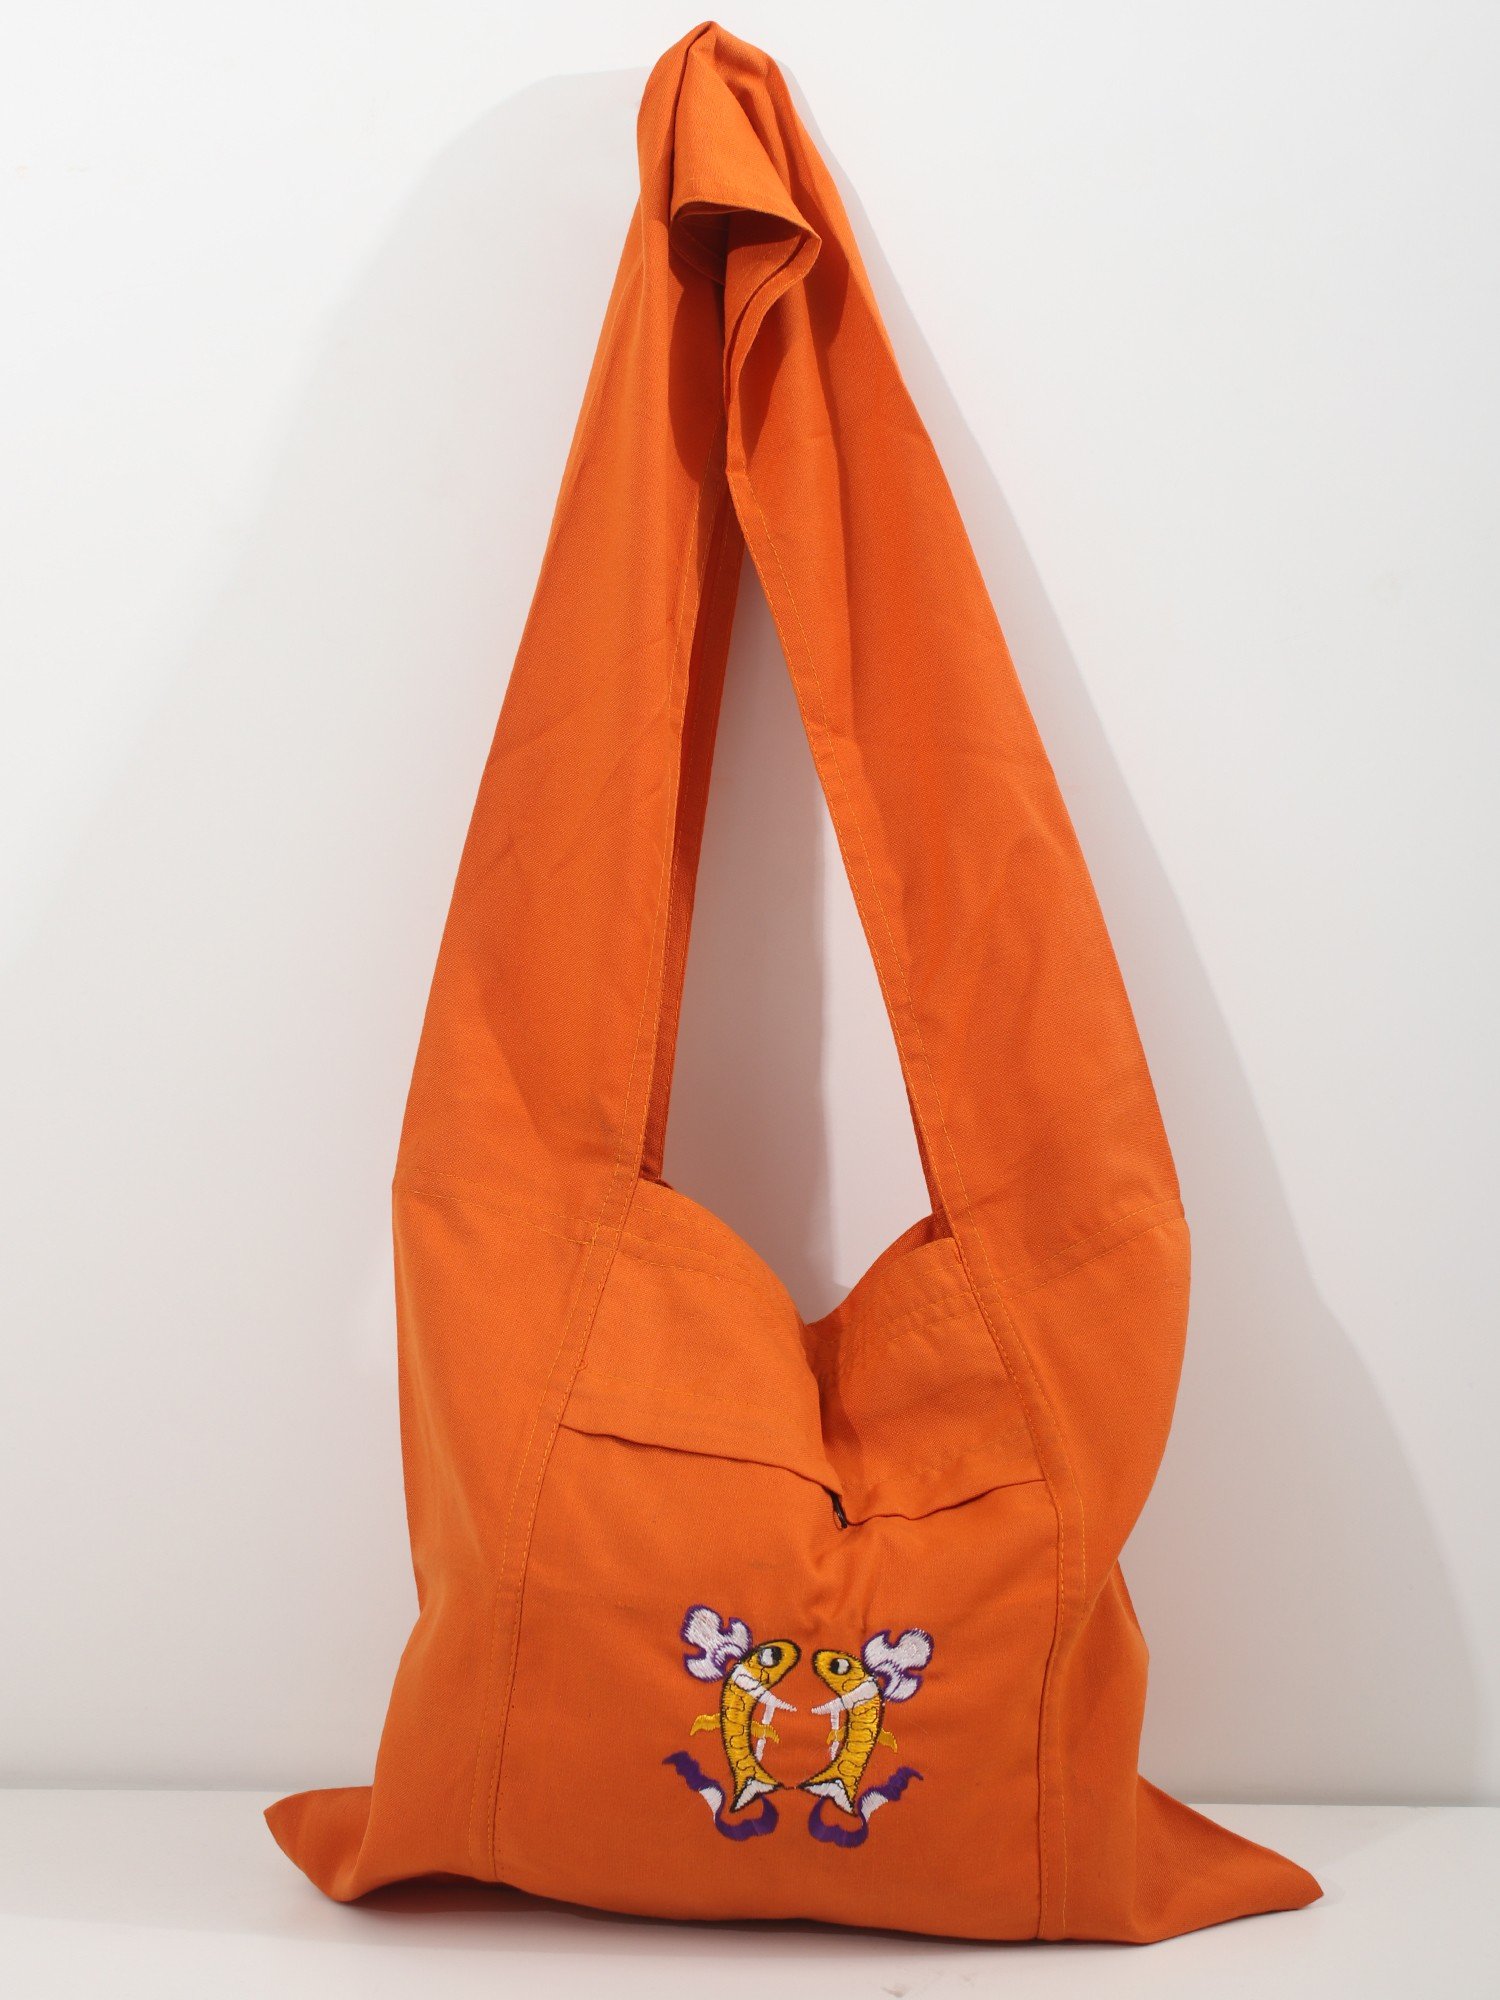 Jhola/Cloth Bag/Naga Shawl Bag - Maroon (medium size, Horizontal) -  Paharizones